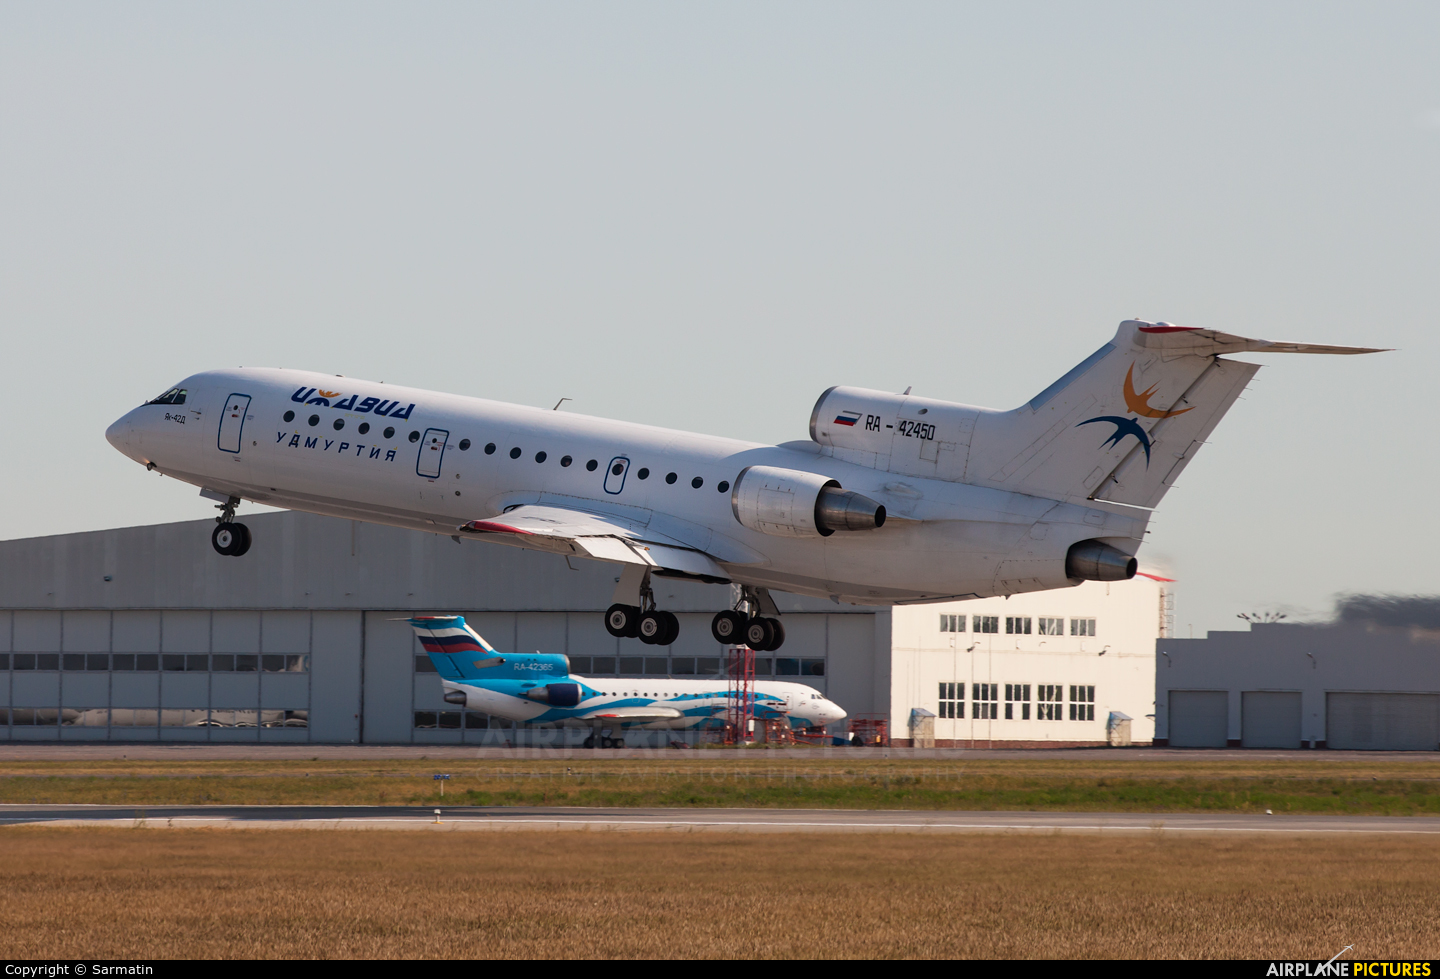 Izhavia RA-42450 aircraft at Kazan